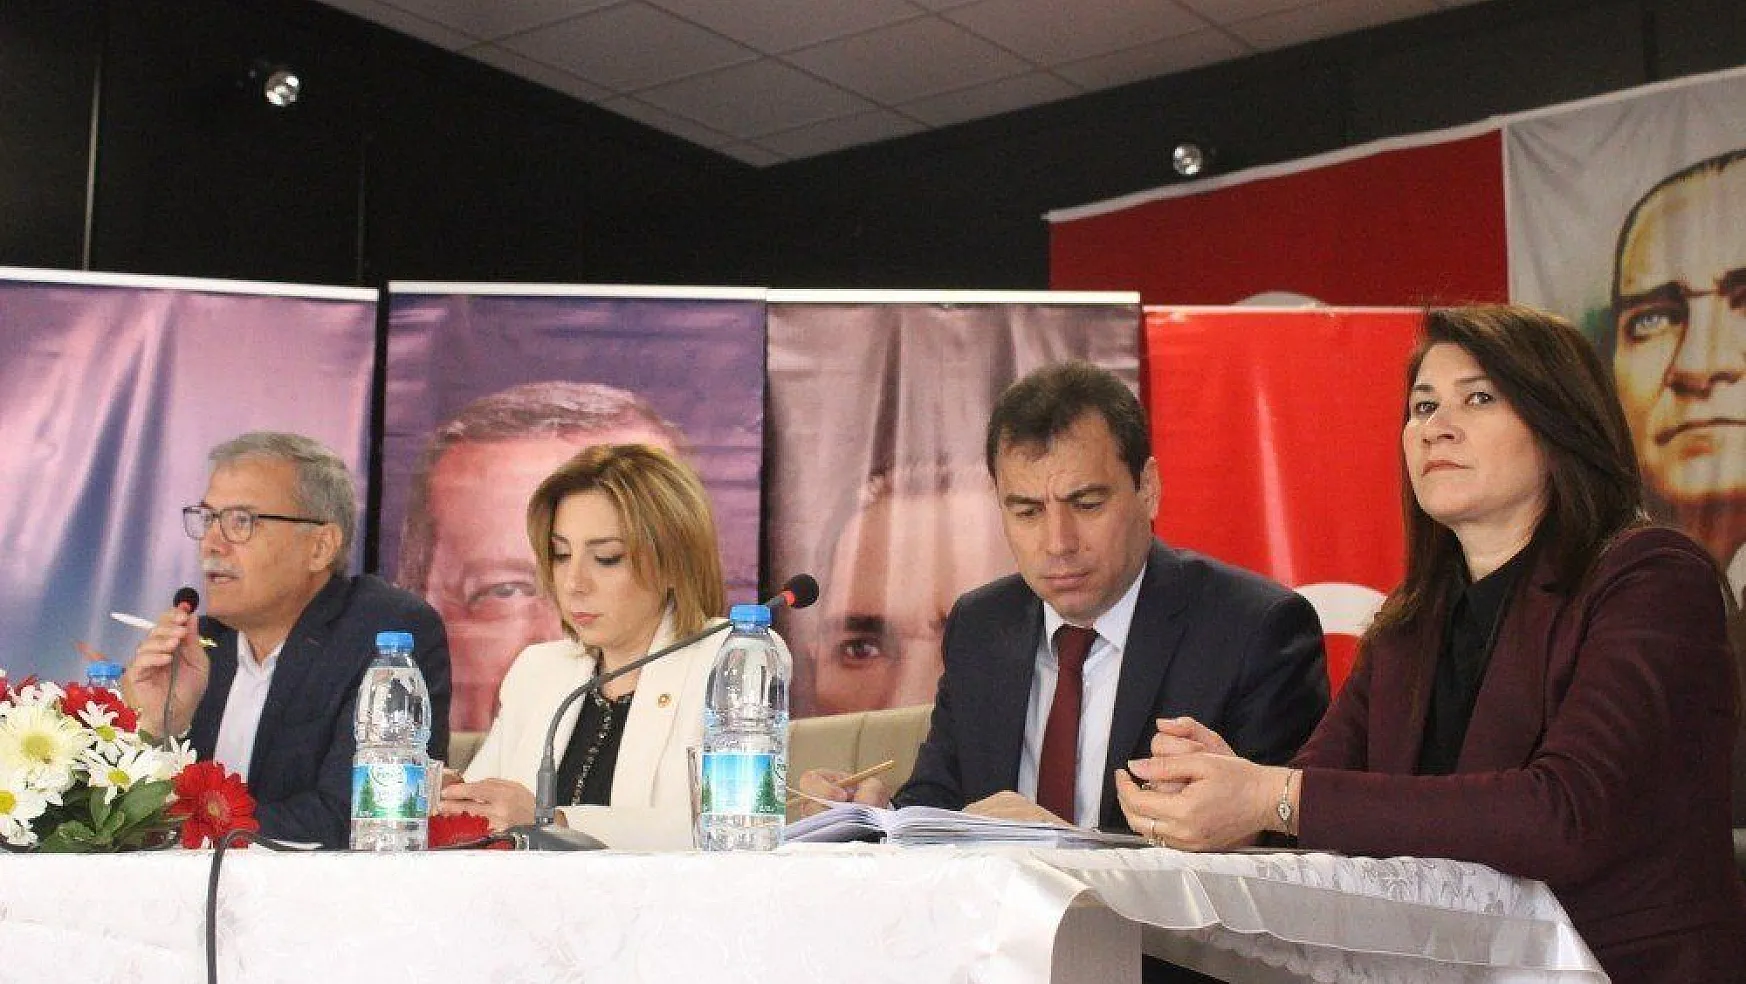 Kadınlar sordu, AK Parti'li adaylar yanıtladı